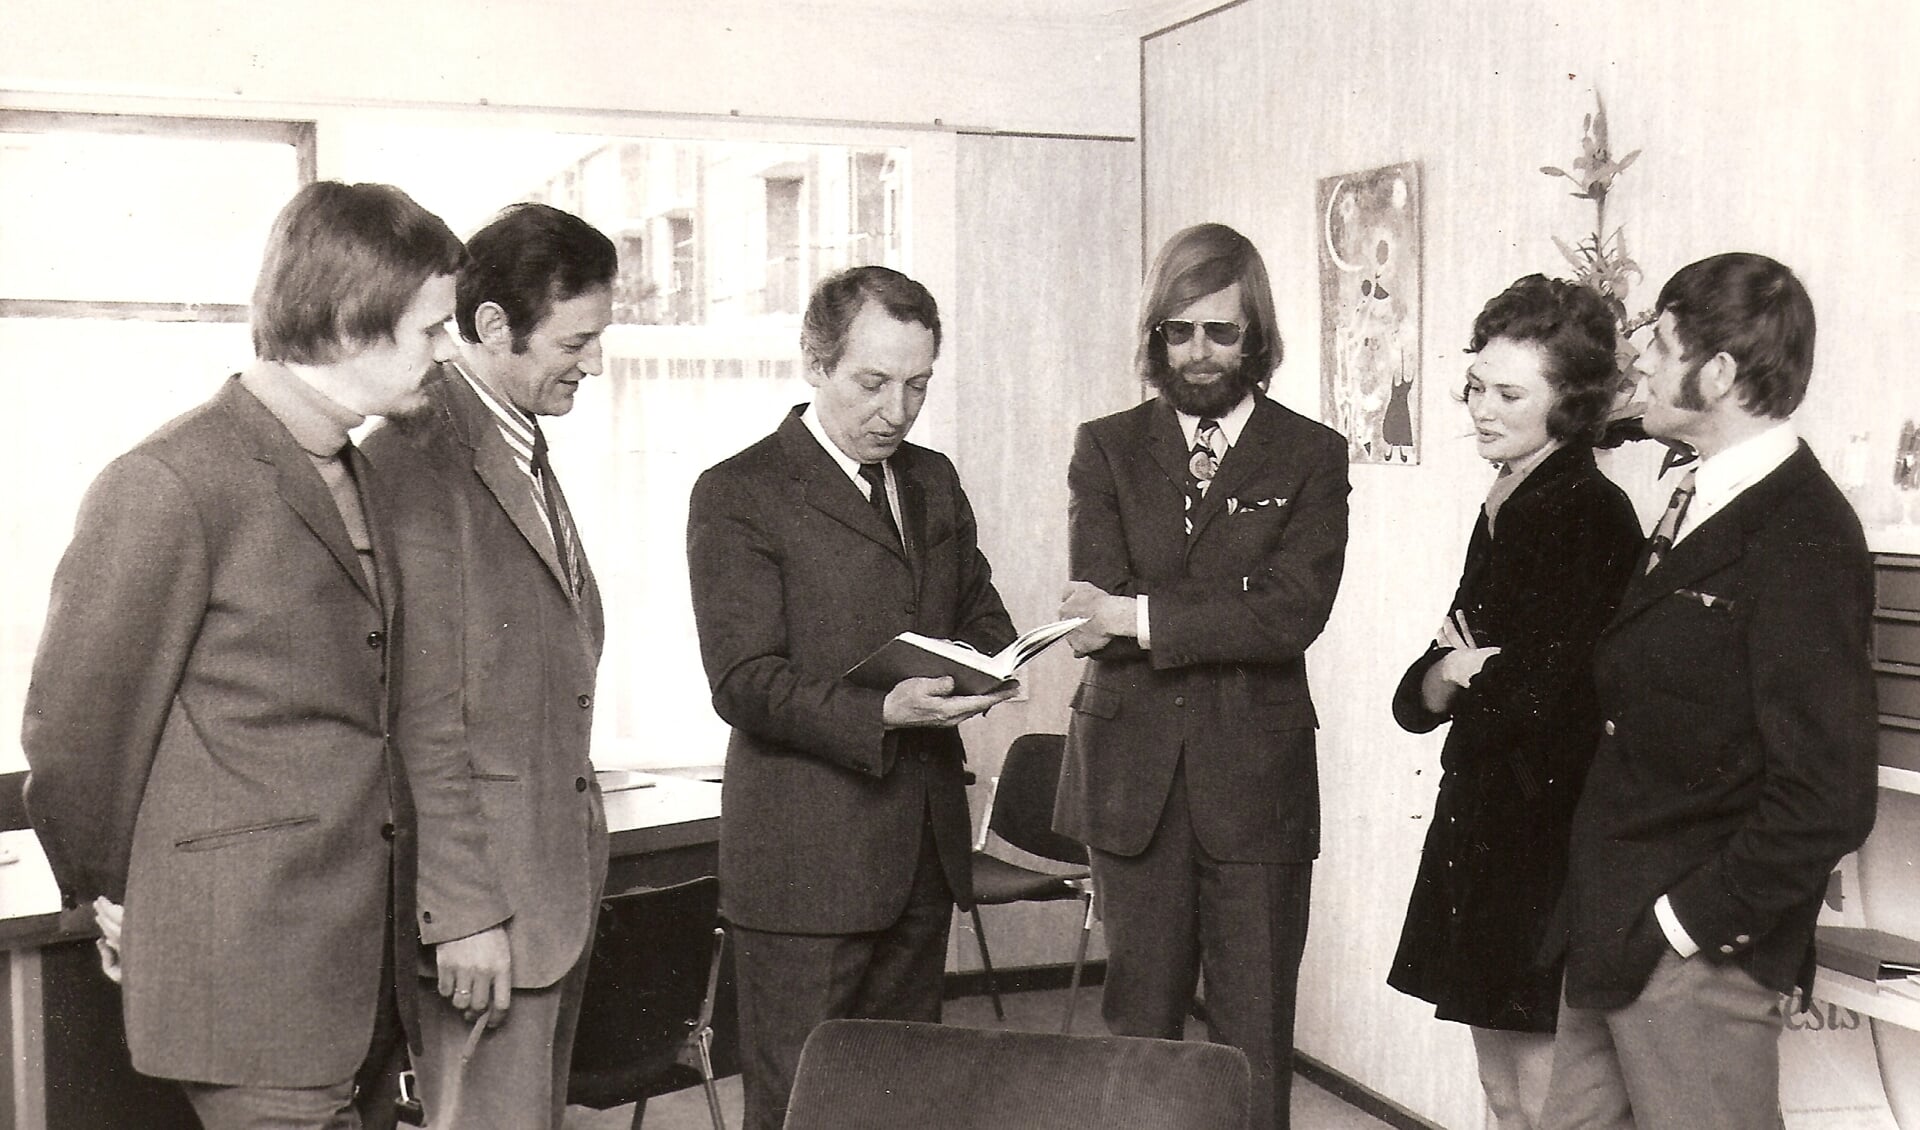 Schoolbegeleidingsdienst februari 1972 uit de periode Violenstraat. Vanaf links: Klaas Geus, onb., wethouder Klaas Muije, Hans de Vries, onb., Jan de Munck.